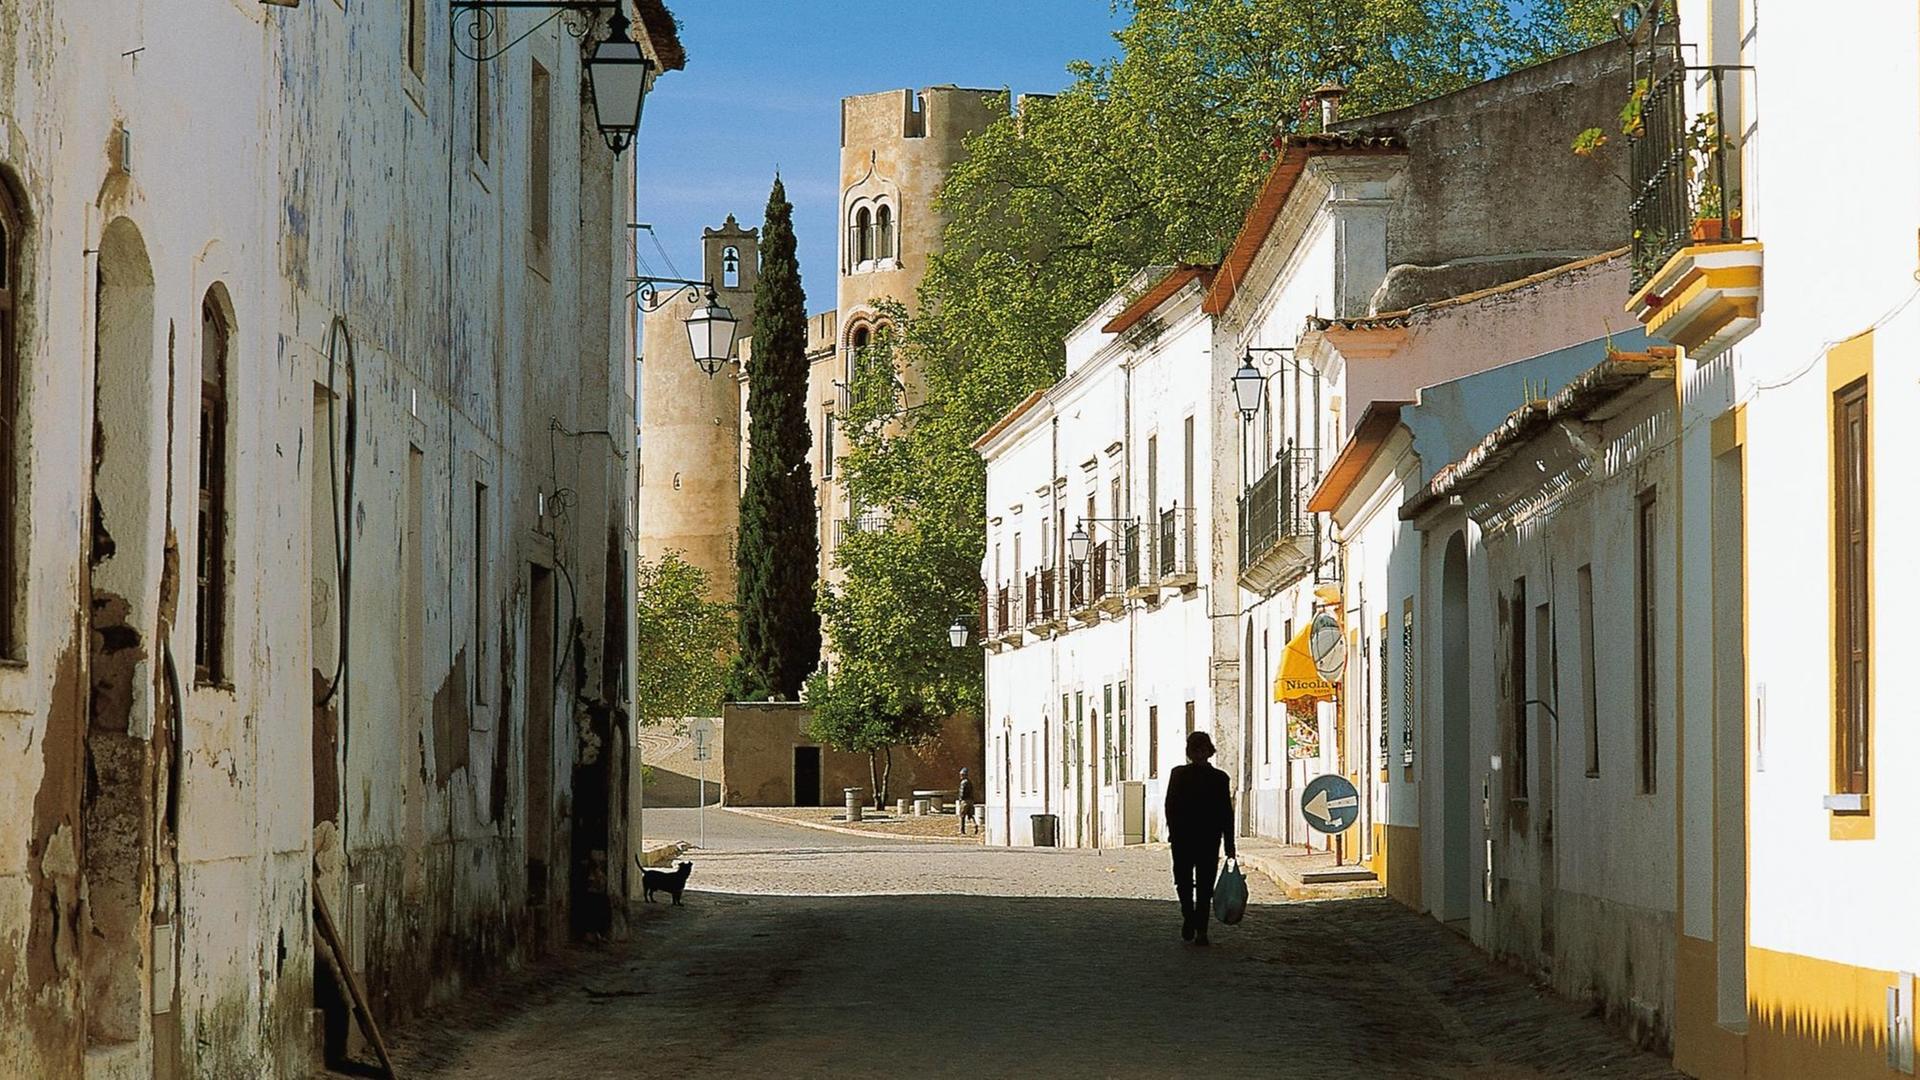 Eine Gasse im Dorf Alvito in Portugal, im Hintergrund ist das Kastell zu sehen